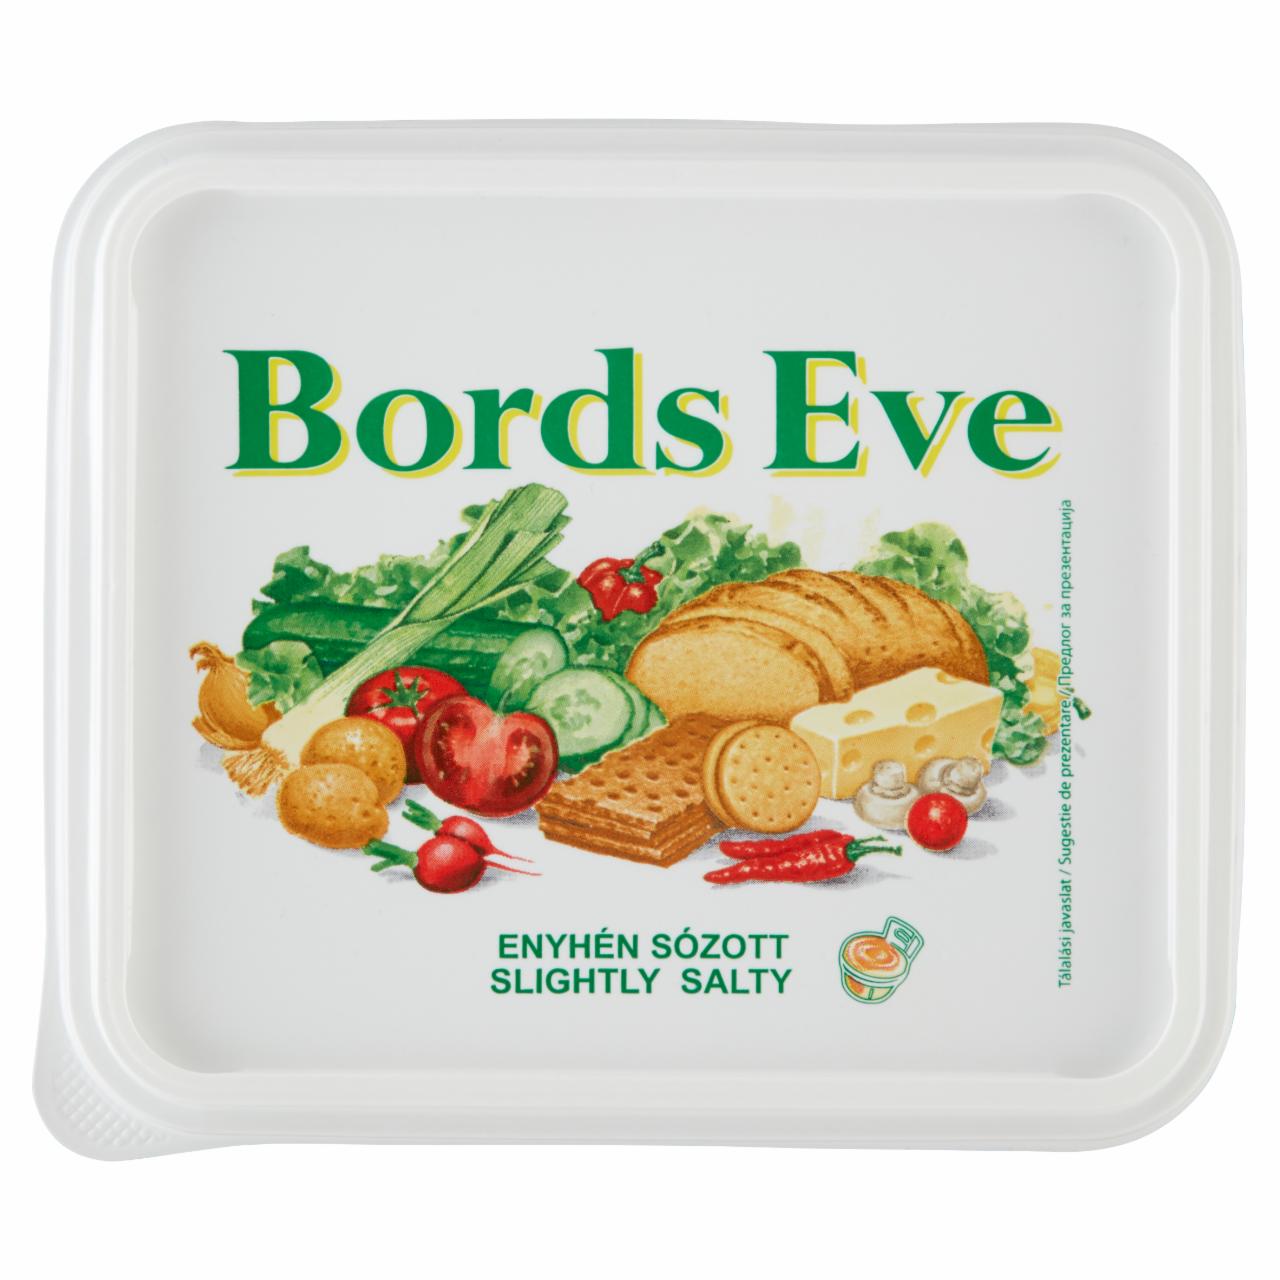 Képek - Bords Eve enyhén sózott, csökkentett zsírtartalmú margarin